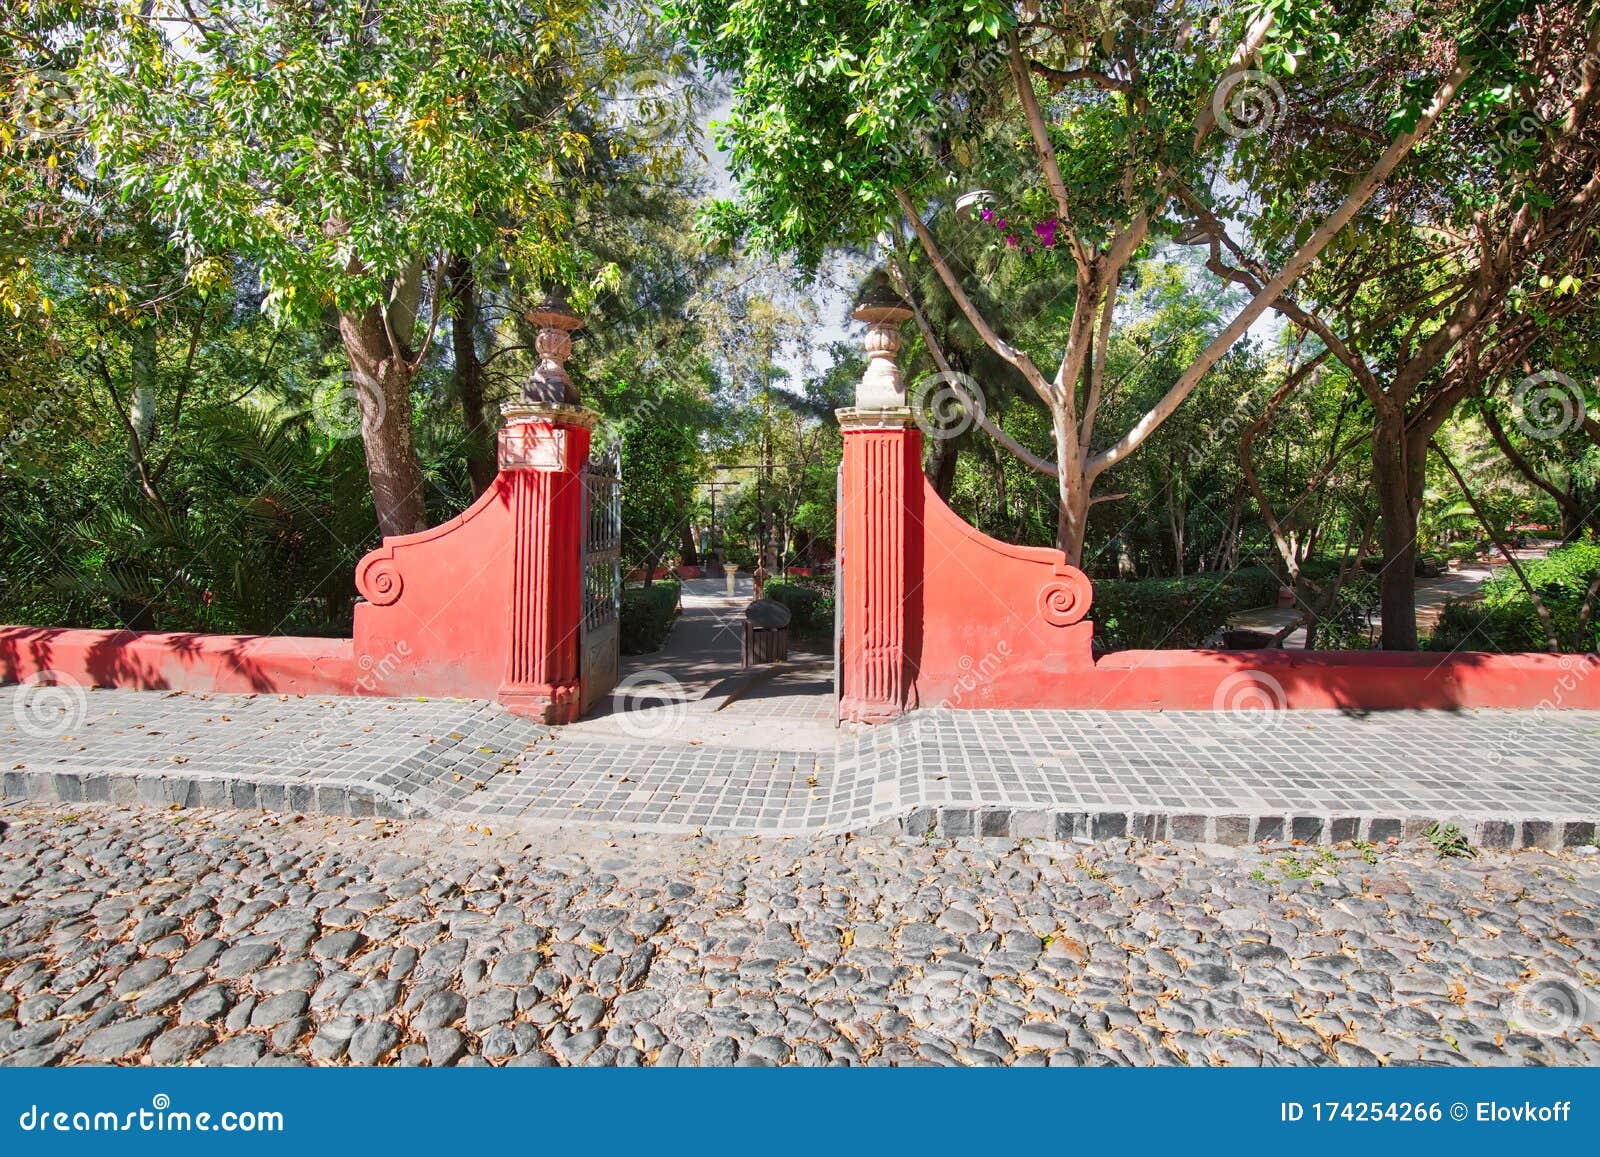 san miguel de allende, benito huarez park in zona centro in historic city center